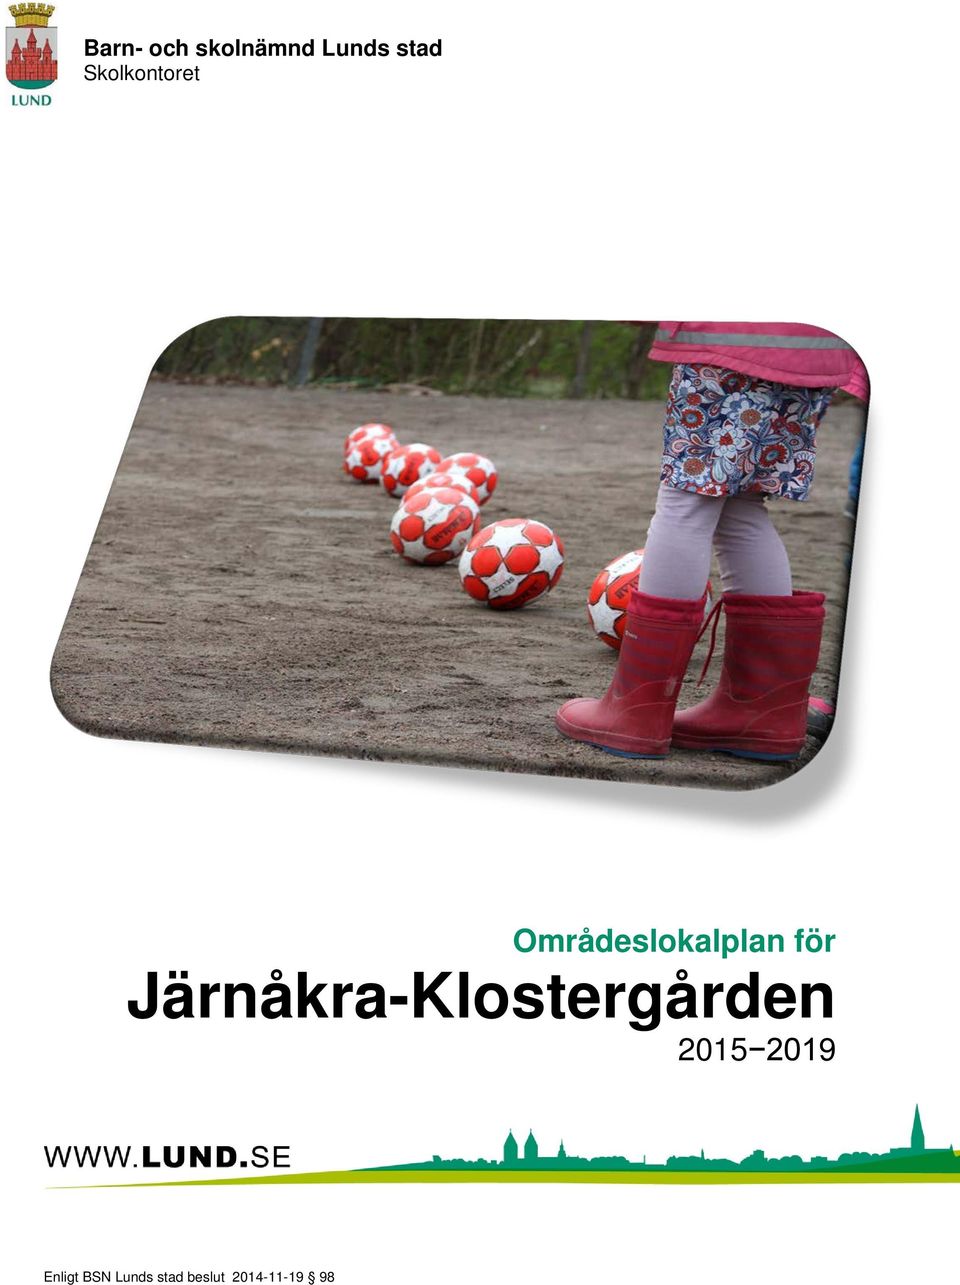 Järnåkra-Klostergården 2015 2019